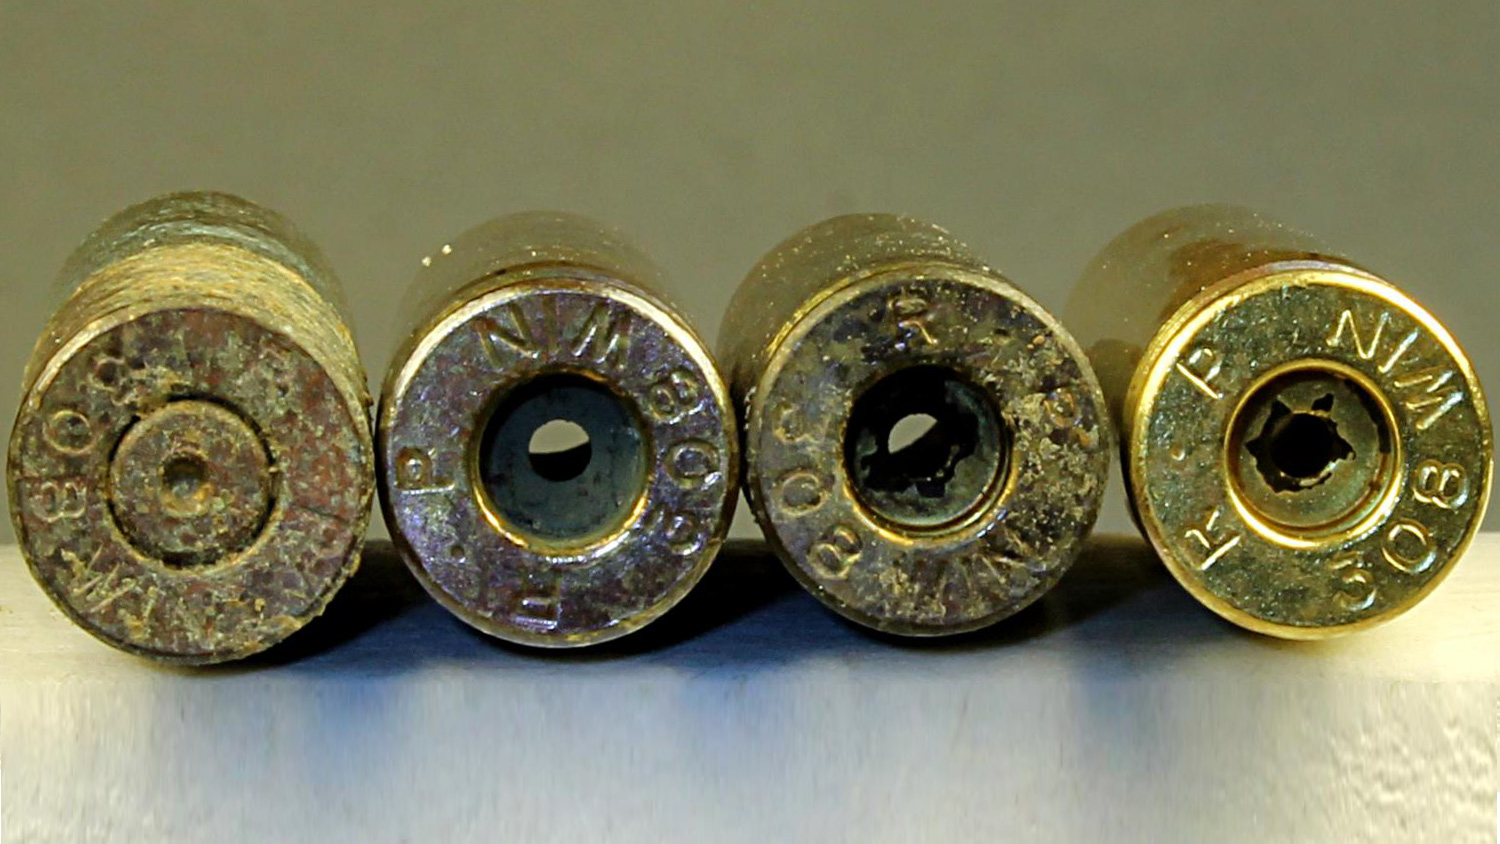 Cleaned primer pockets for .308 cartridge brass